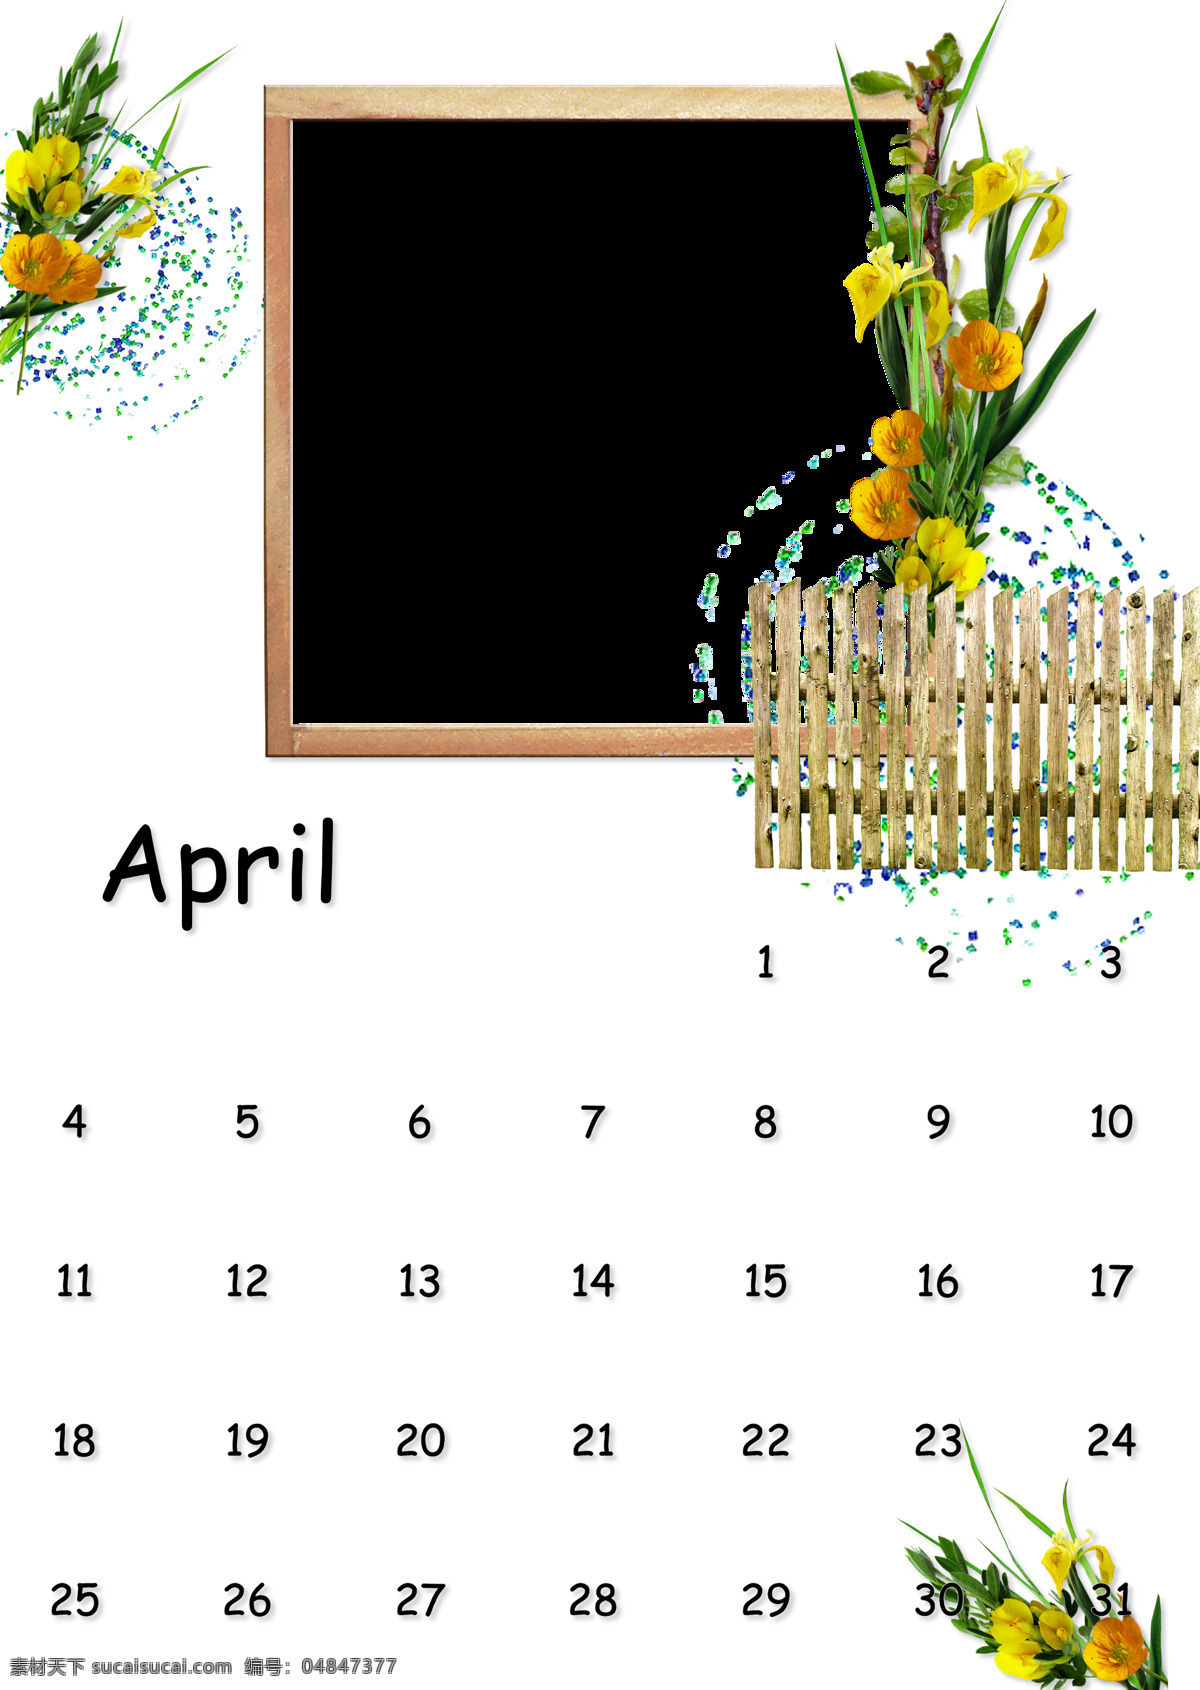 4月月历相框 2010 4月 月历相框 花边相框 木质相框 黄花 绿叶 栅栏 相框 艺术相框 年 月历 边框相框 底纹边框